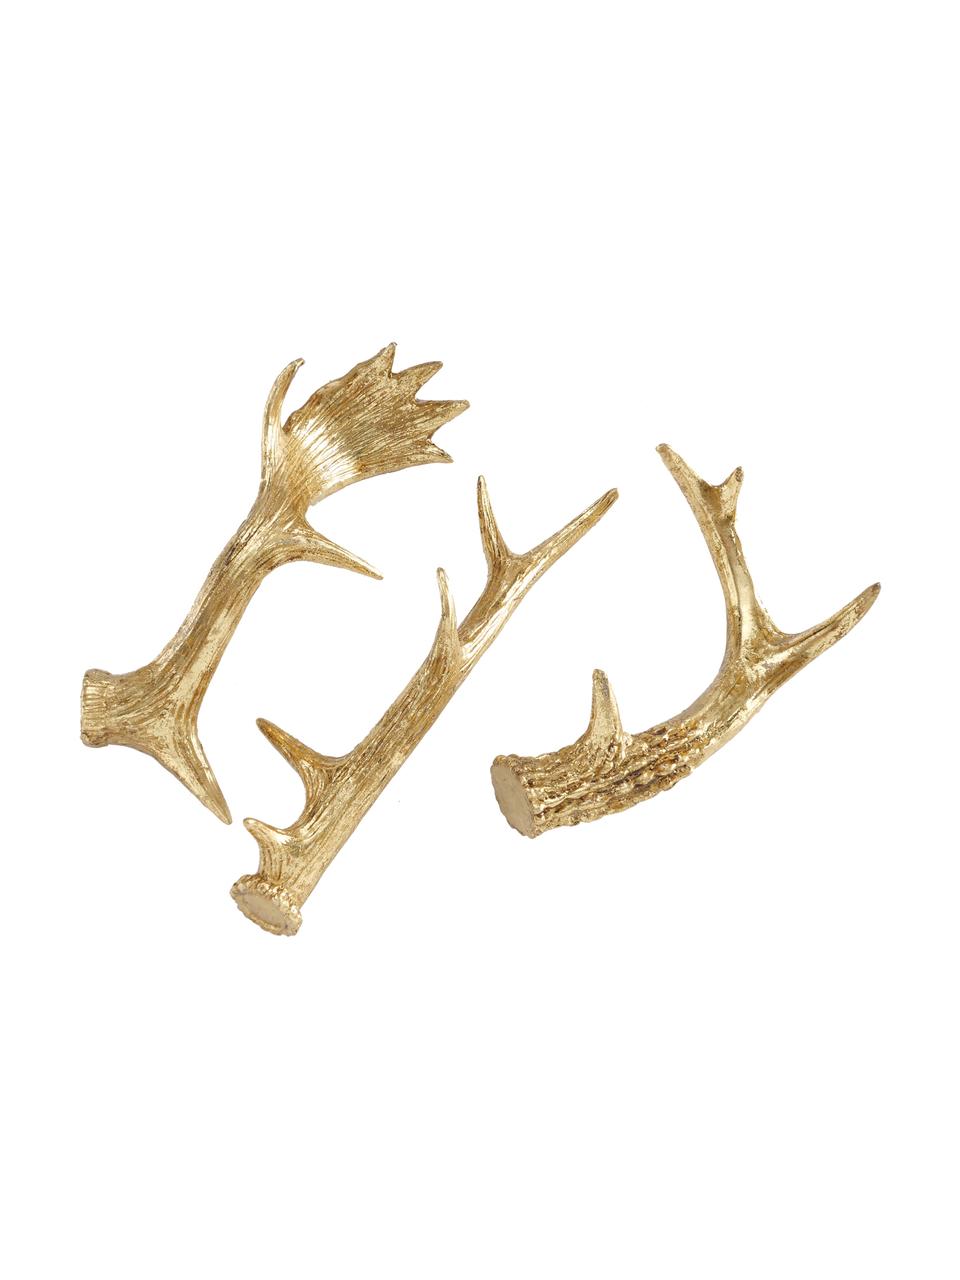 Deko-Geweih-Set Deer, 3 Stück, Kunstharz, Goldfarben, Set mit verschiedenen Größen